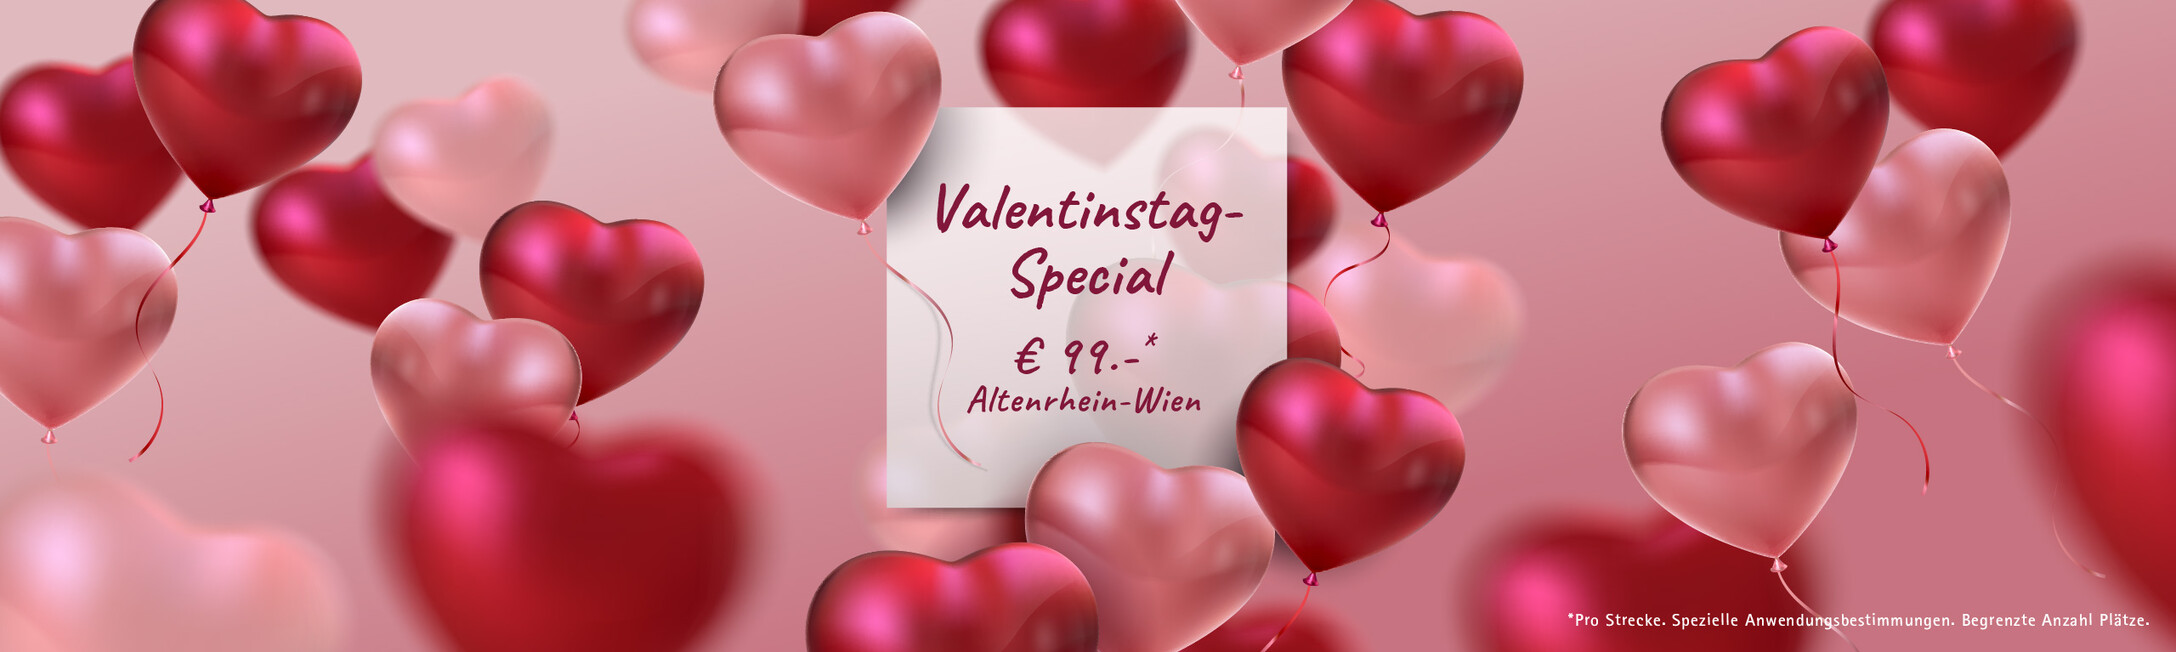 Valentinstag Special Günstige Flüge nach Wien